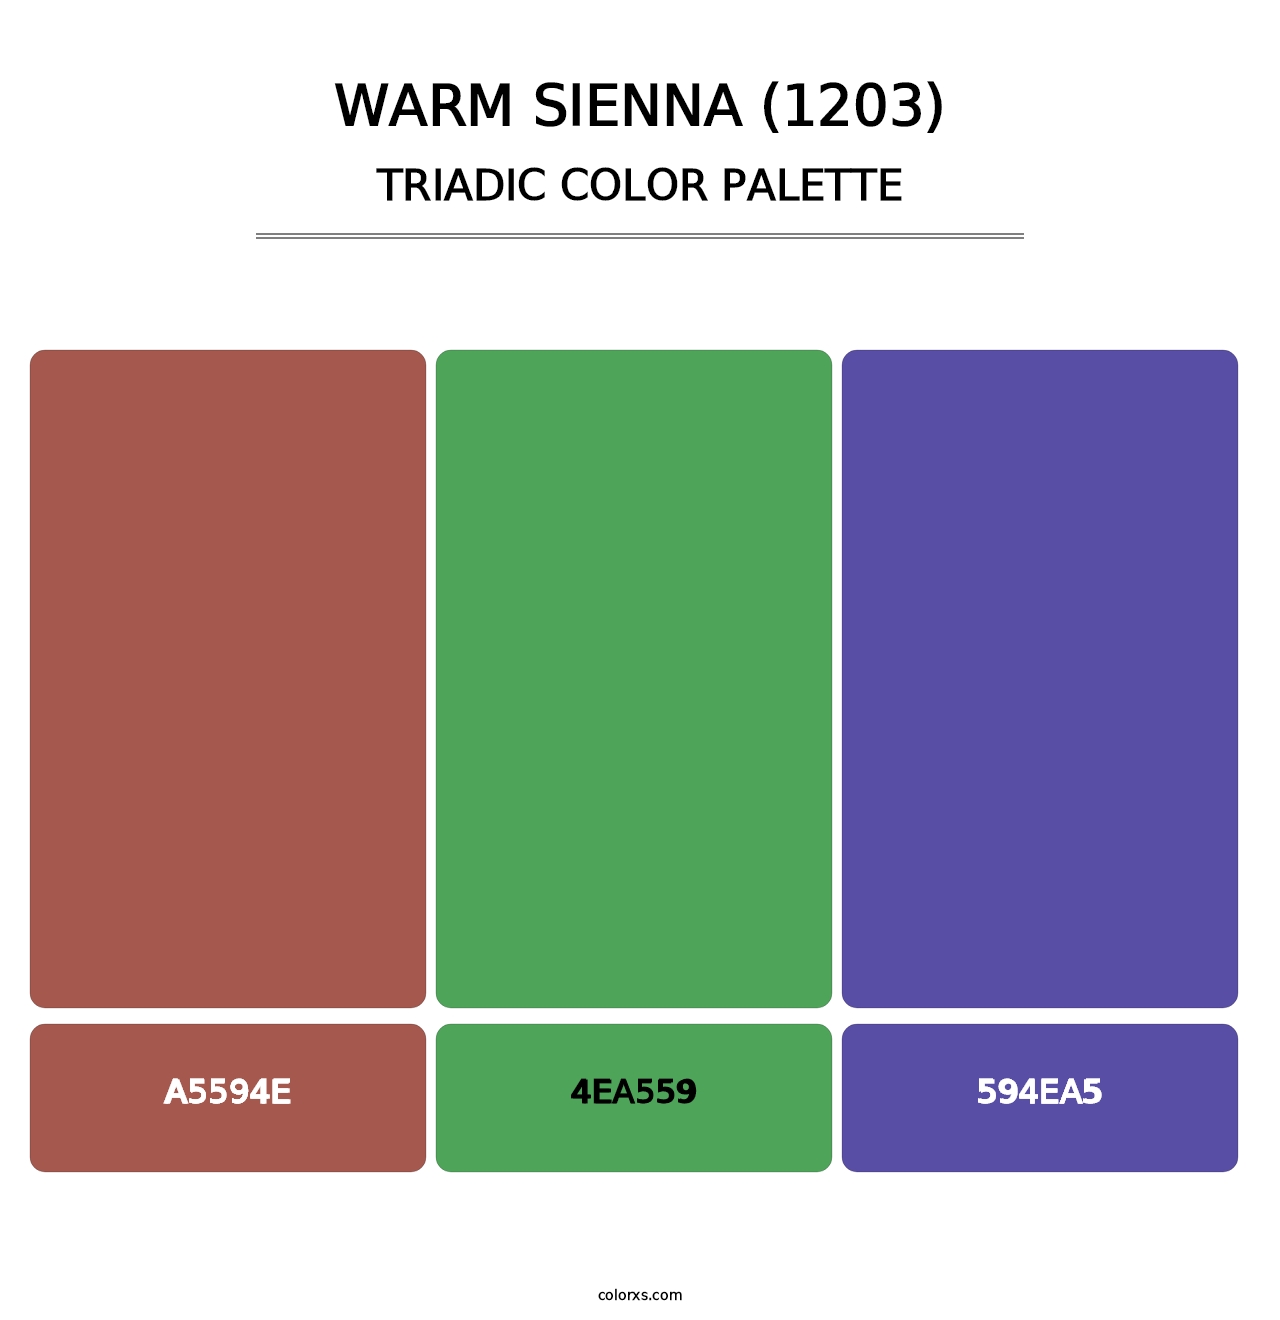 Warm Sienna (1203) - Triadic Color Palette